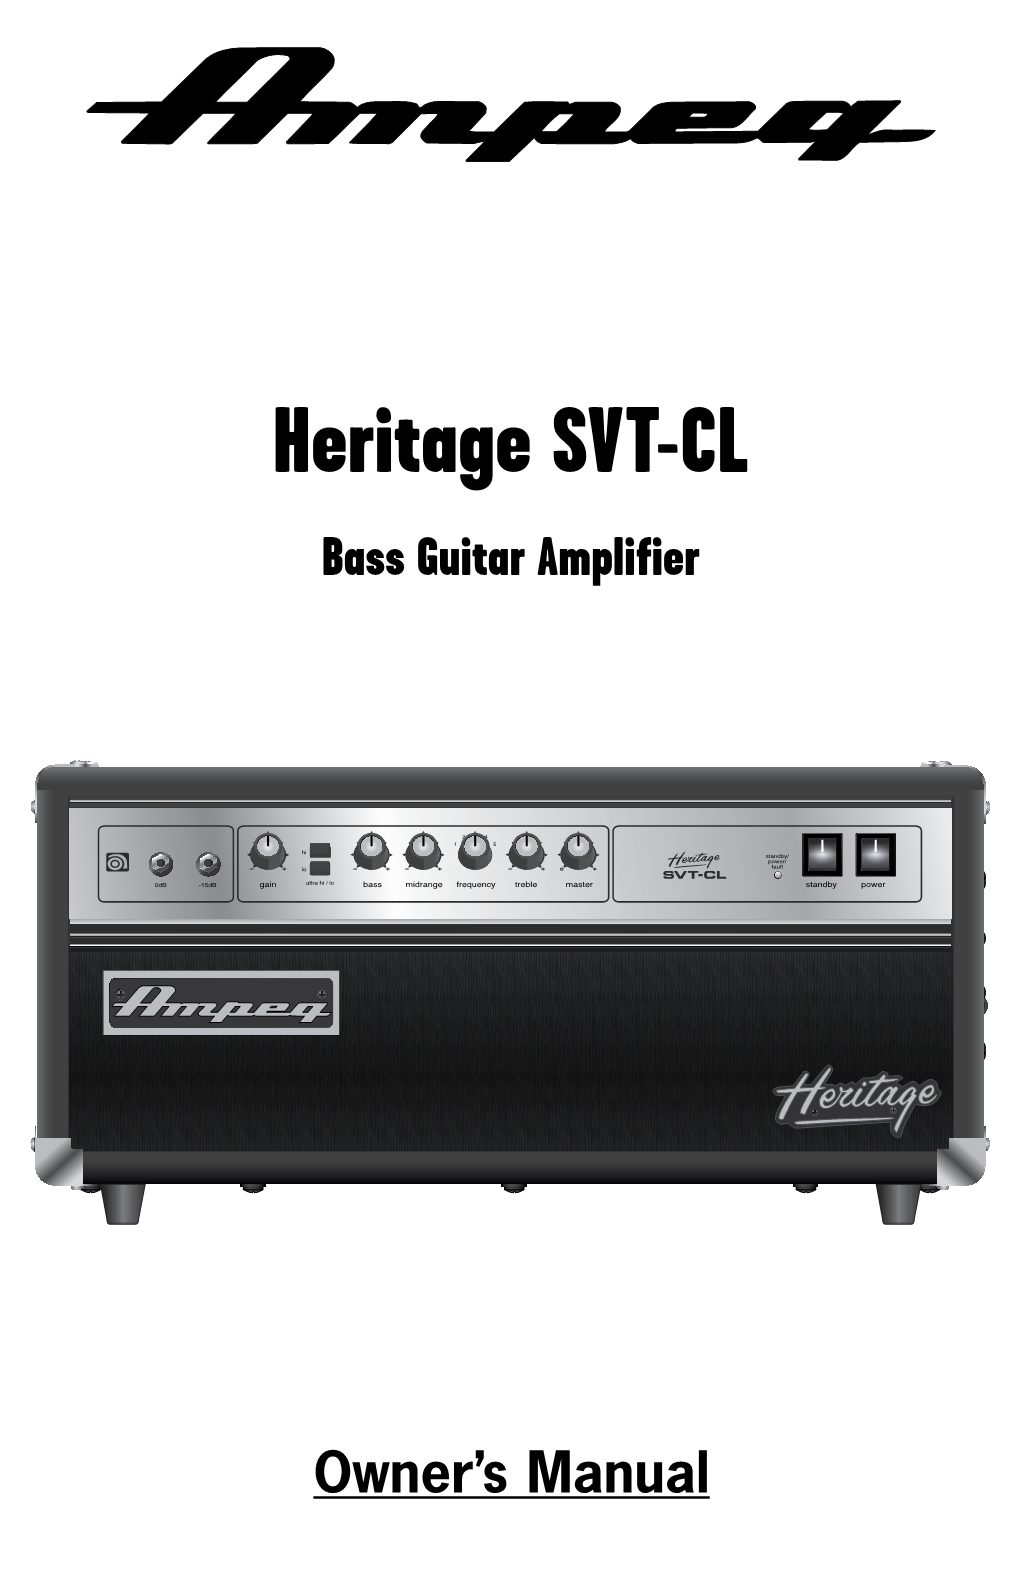 Heritage SVT-CL Bass Guitar Amplifier